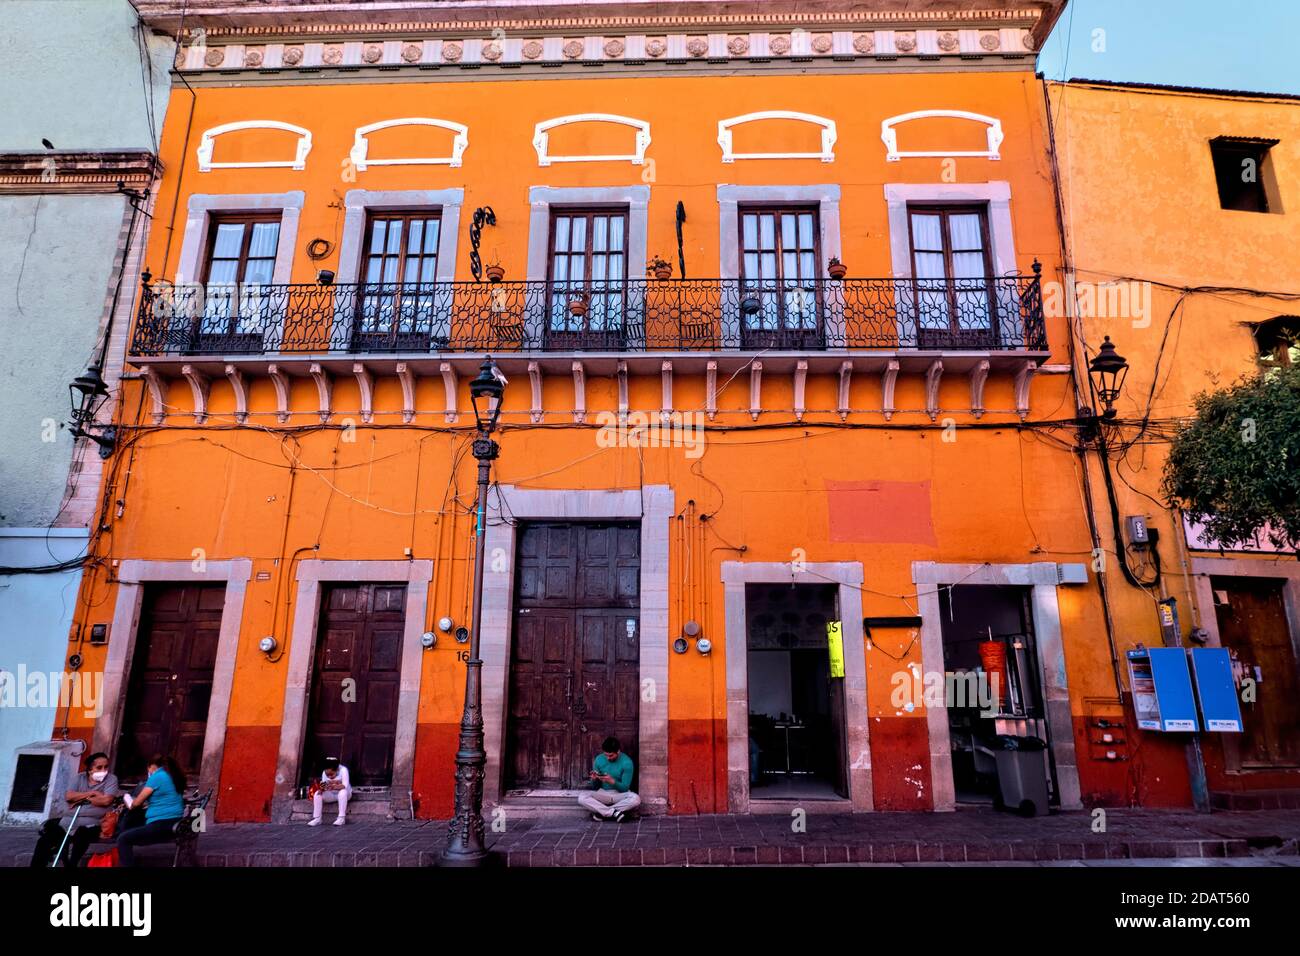 Colorful architecture in UNESCO World Heritage Guanajuato, Mexico Stock Photo